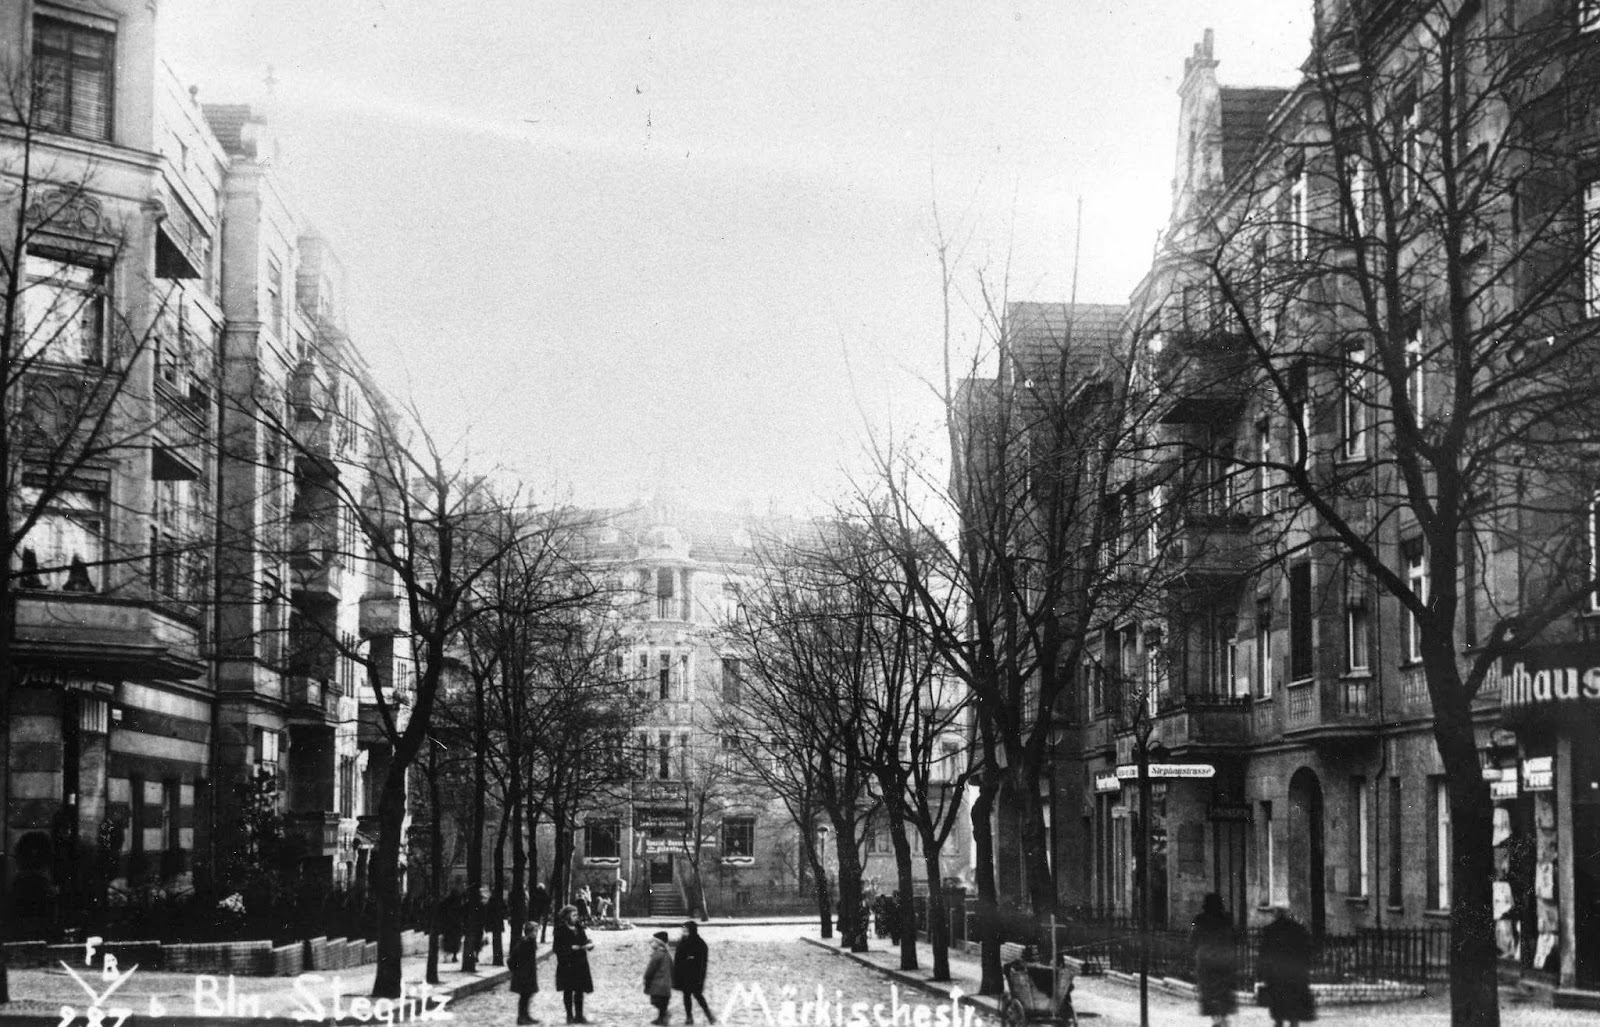 Berlín en los años 20 y 30